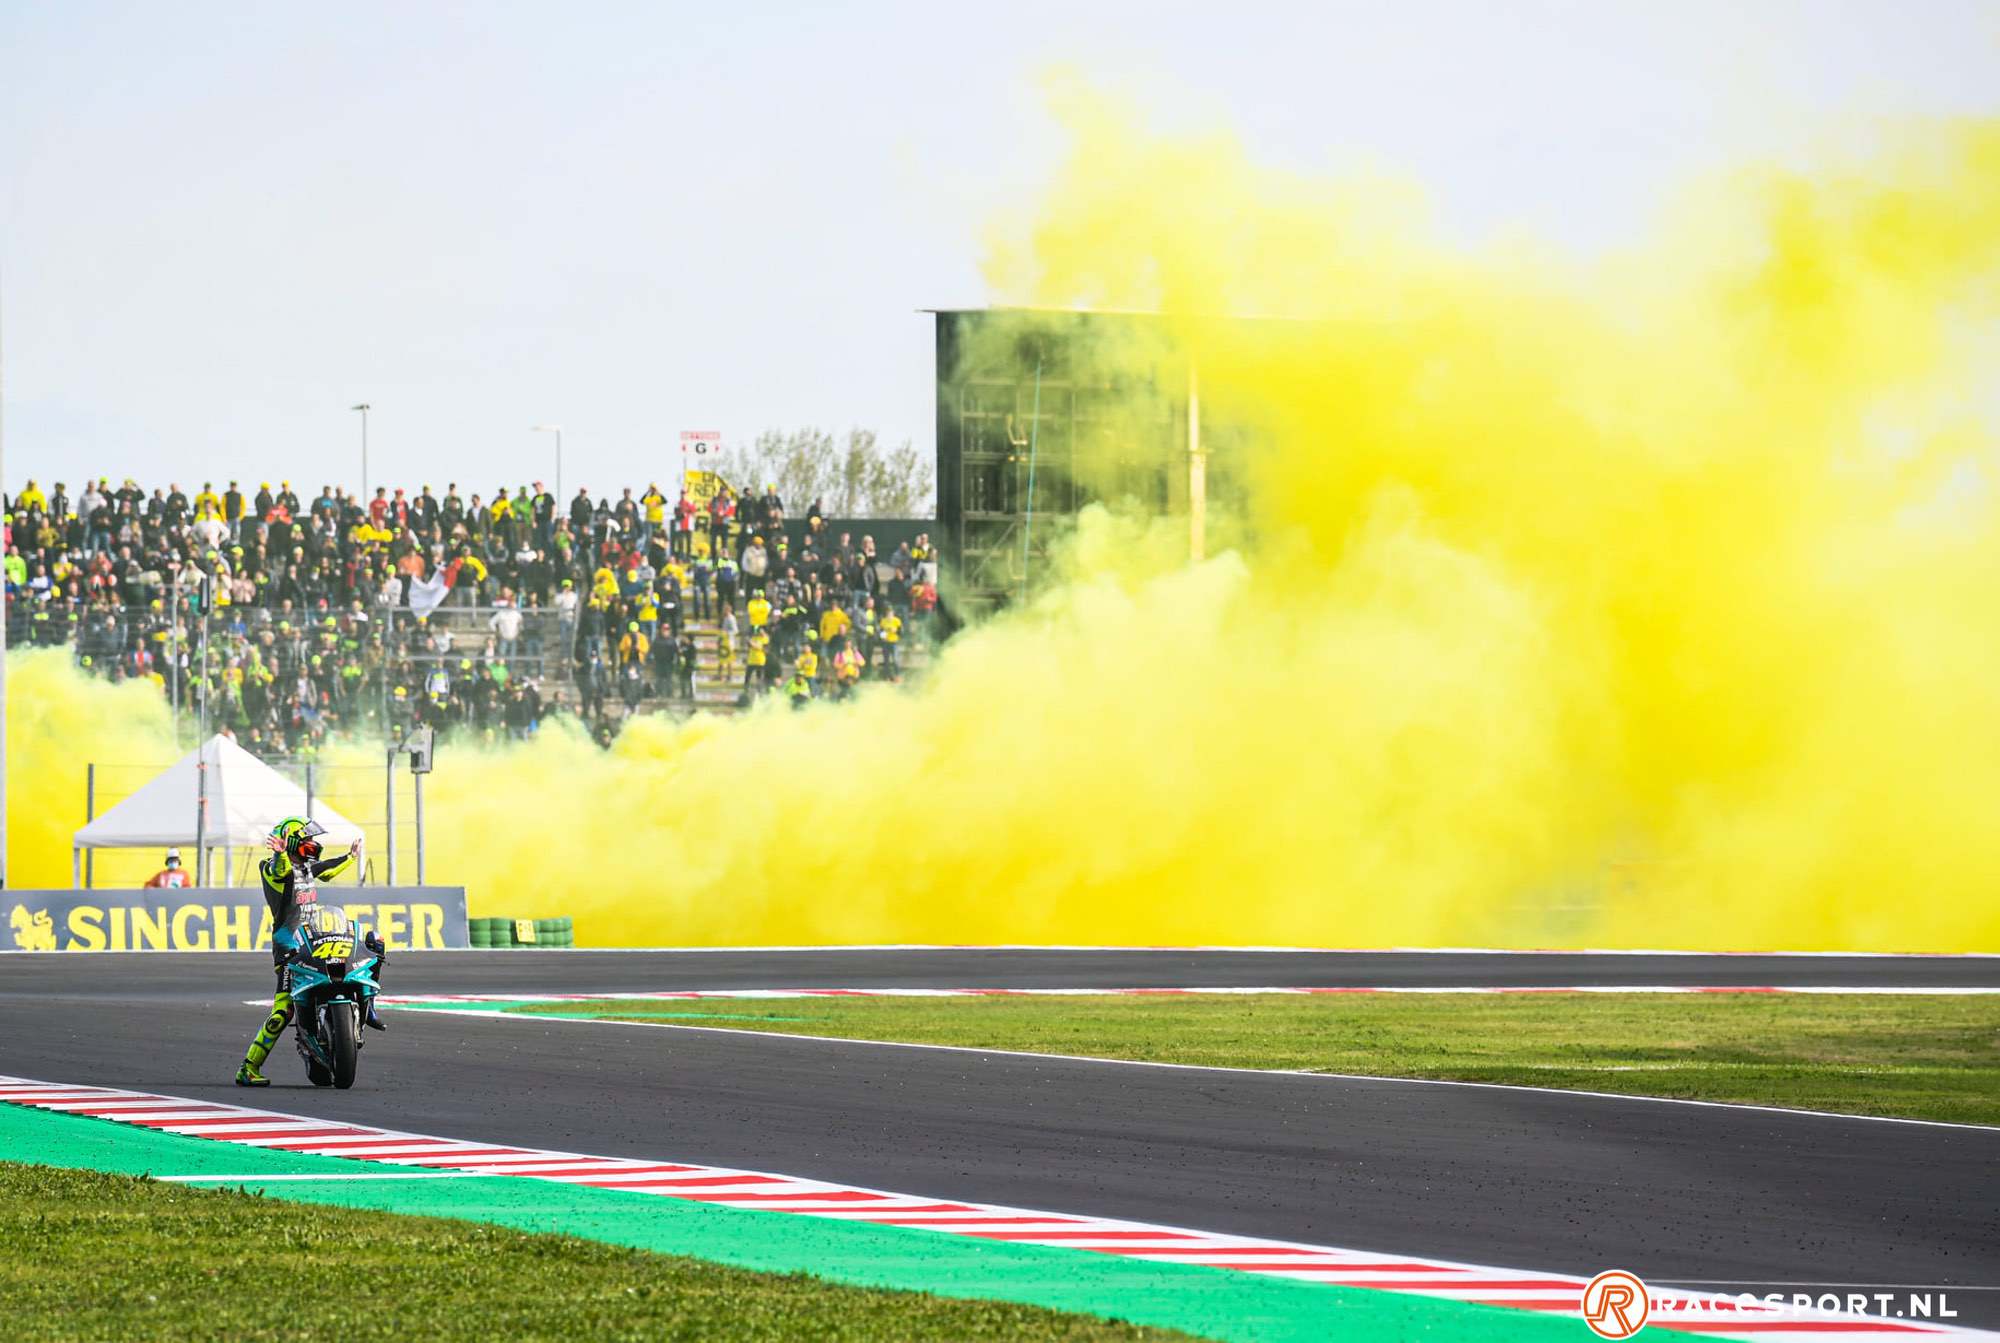 Valentino Rossi assente questo fine settimana, quale sarà l’impatto della gara sammarinese?